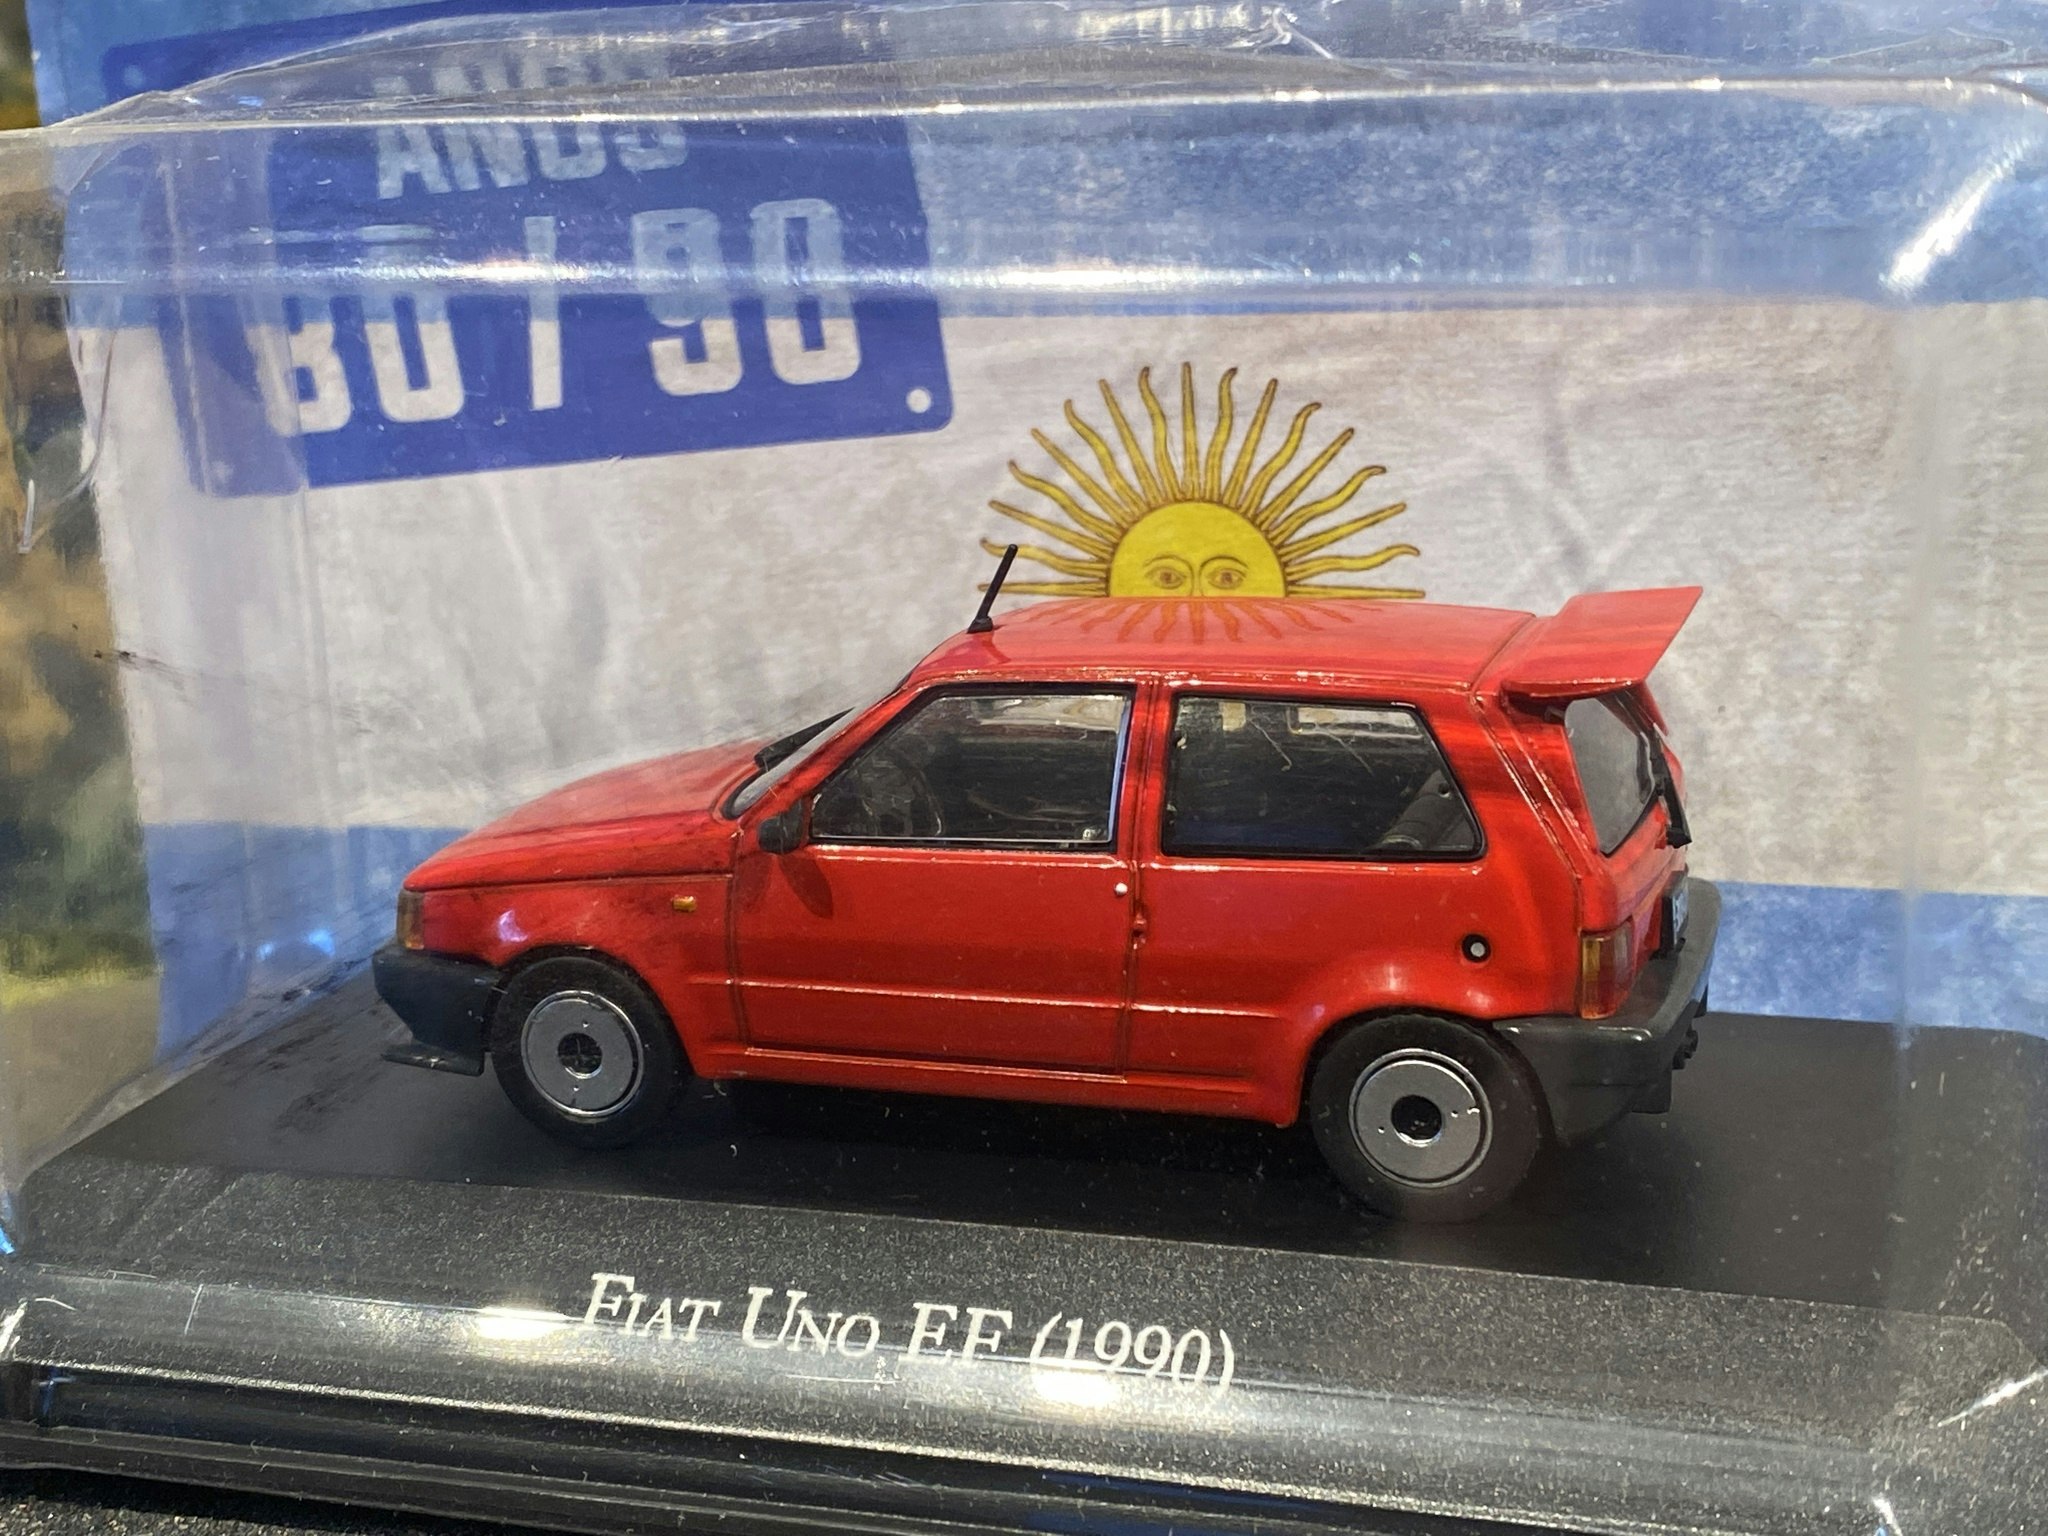 Skala 1/43: Fiat Uno EF 90' från Rubbo